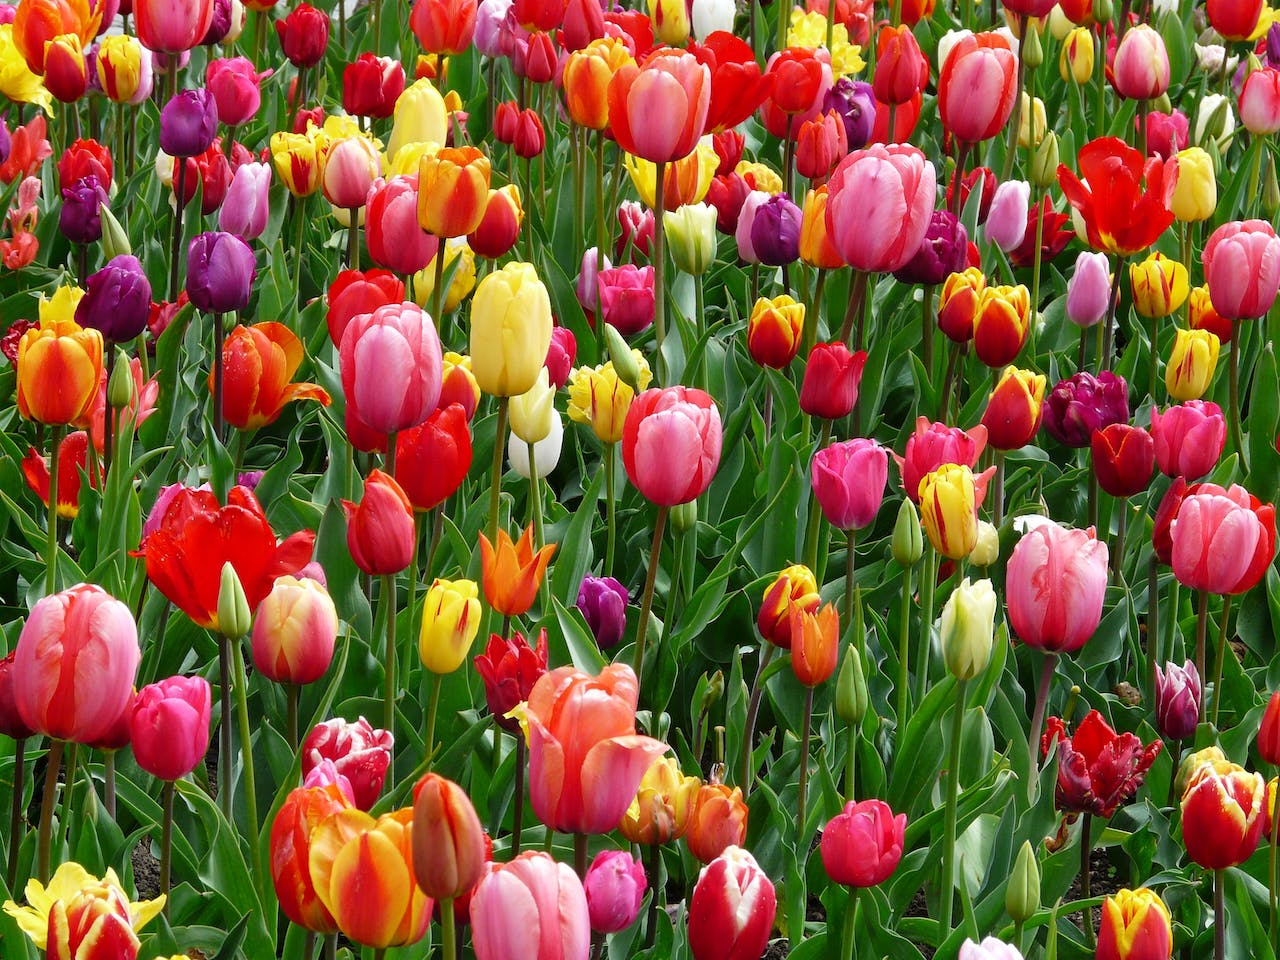 Na tym obrazku widać piękne tulipany, które rozkwitają w pełnym kolorze